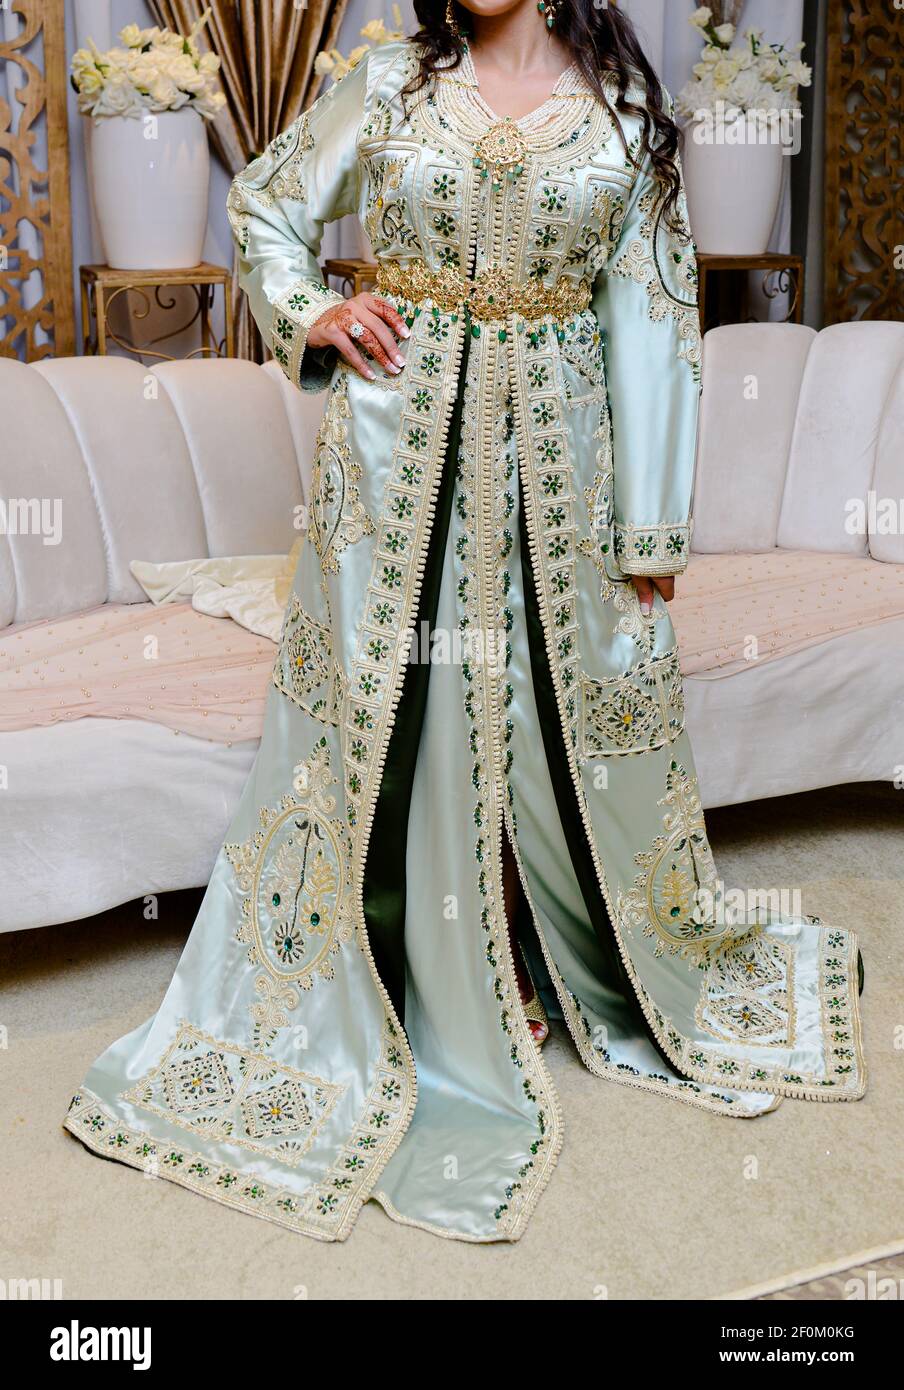 Marokkanische Kaftan, marokkanischen Kleid . Traditionelle marokkanische  Kleidung von Frauen bei Hochzeiten getragen. Eine der berühmtesten  Kleidungsstücke der Welt Stockfotografie - Alamy